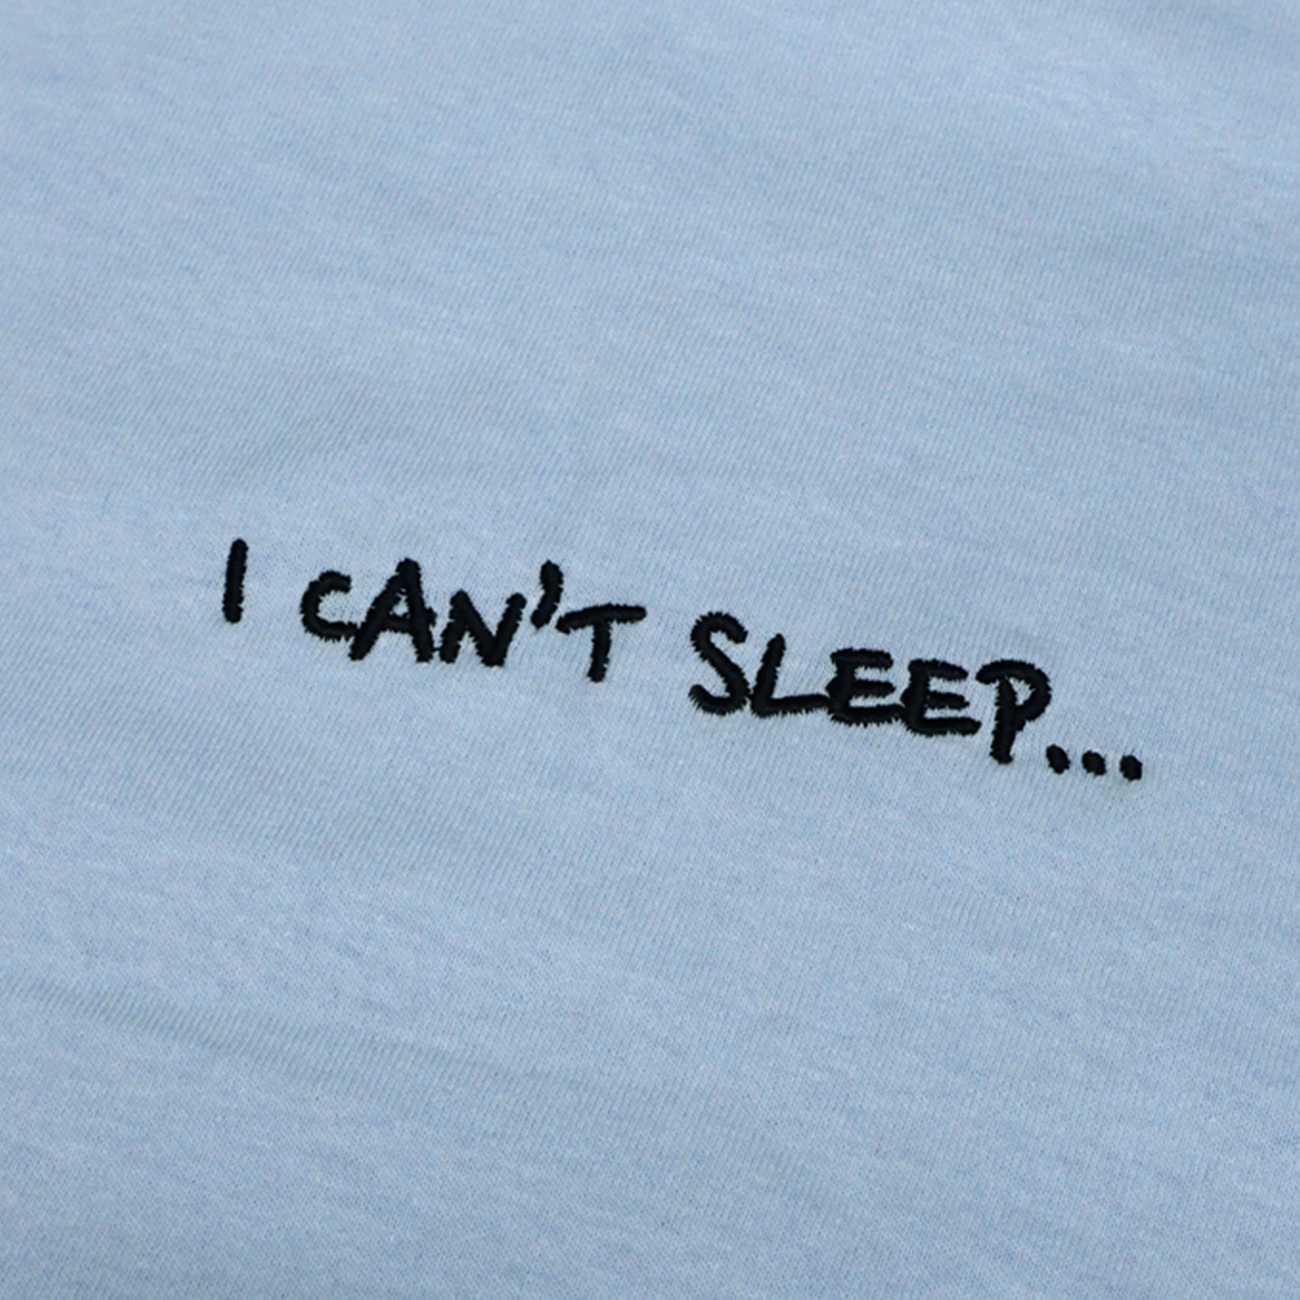 I CAN'T SLEEP...